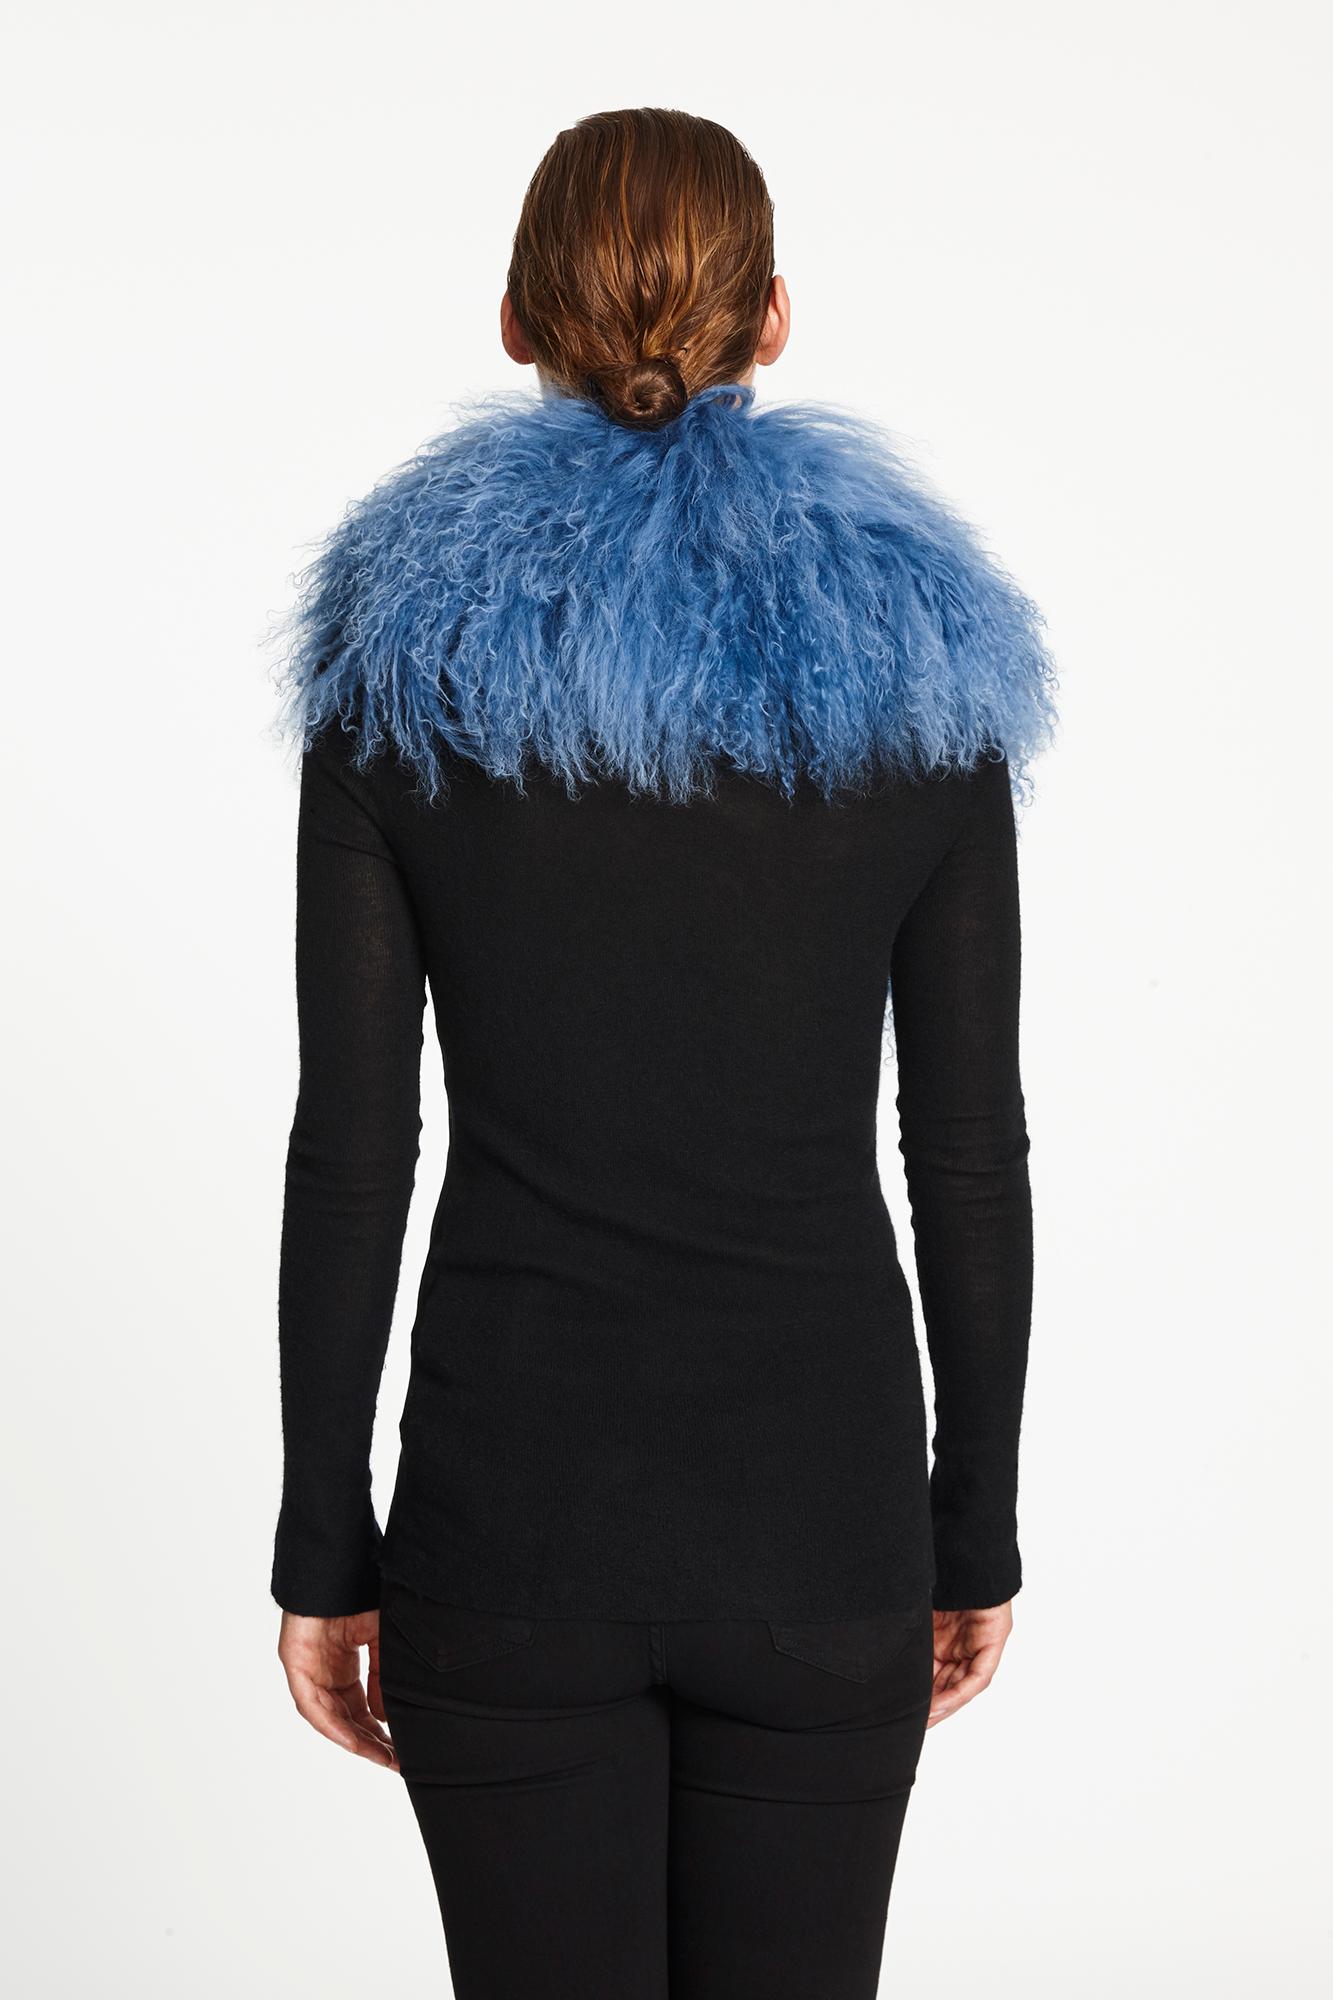 Verheyen London Shawl Collar in Blue Topaz Mongolian Lamb Fur lined in silk new  1